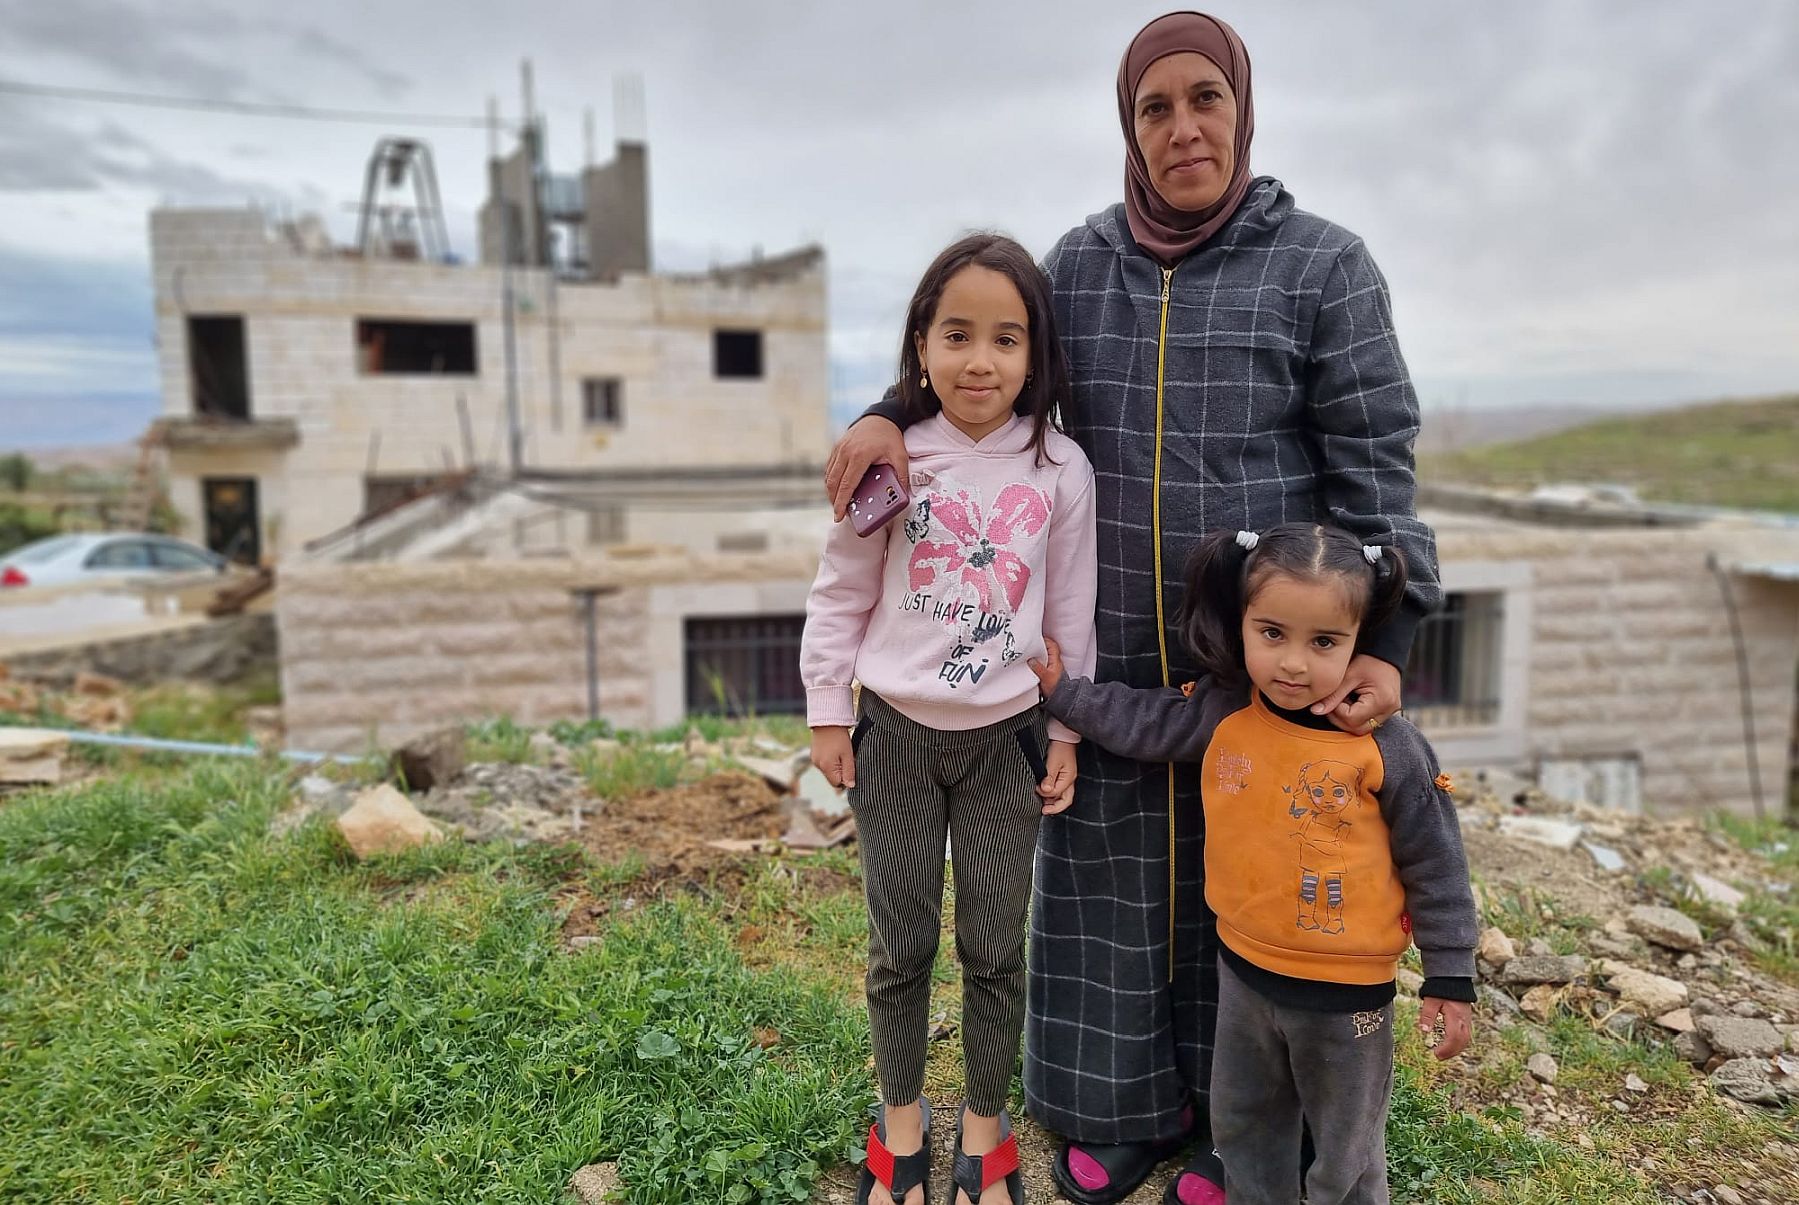 "הצבא לא מאפשר לנו לבנות כמו שצריך". פאטמה אל-וחש מהכפר גי'ב א-דיב עם בנותיה (צילום: יובל אברהם) 